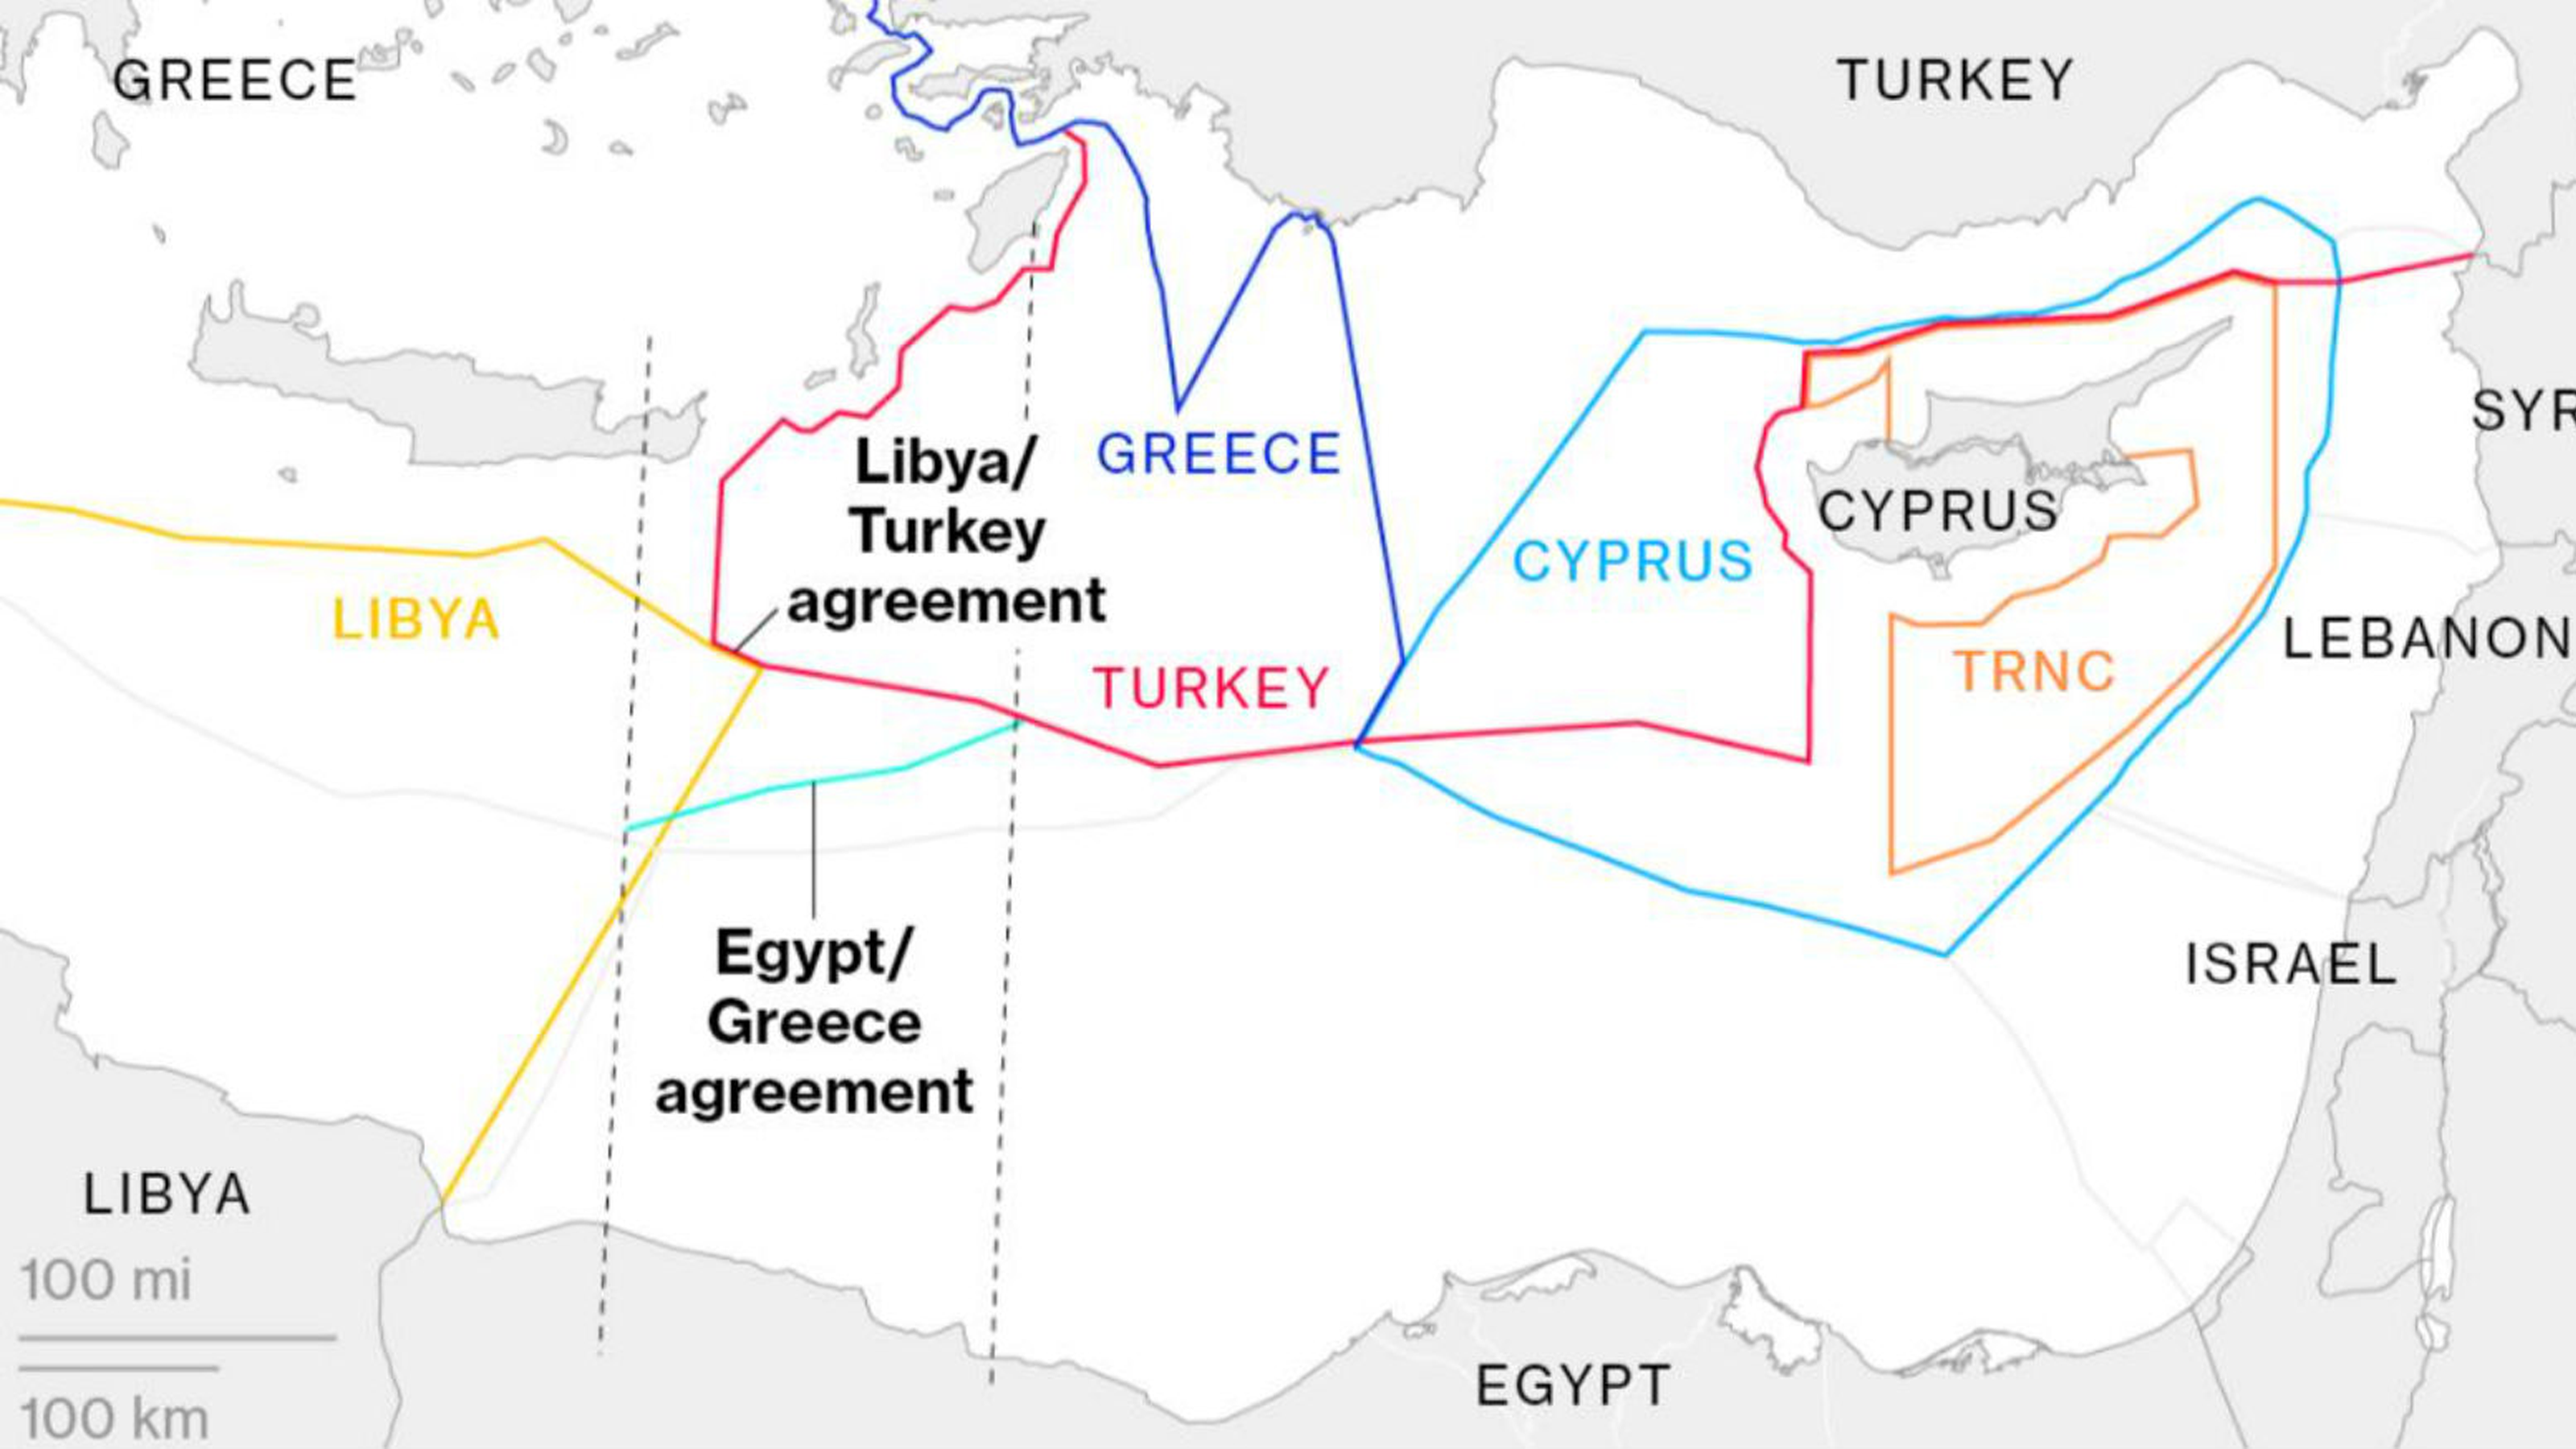 空口威脅沒啥用處！ 土耳其終於放下架子，希臘也不想打架同意談判